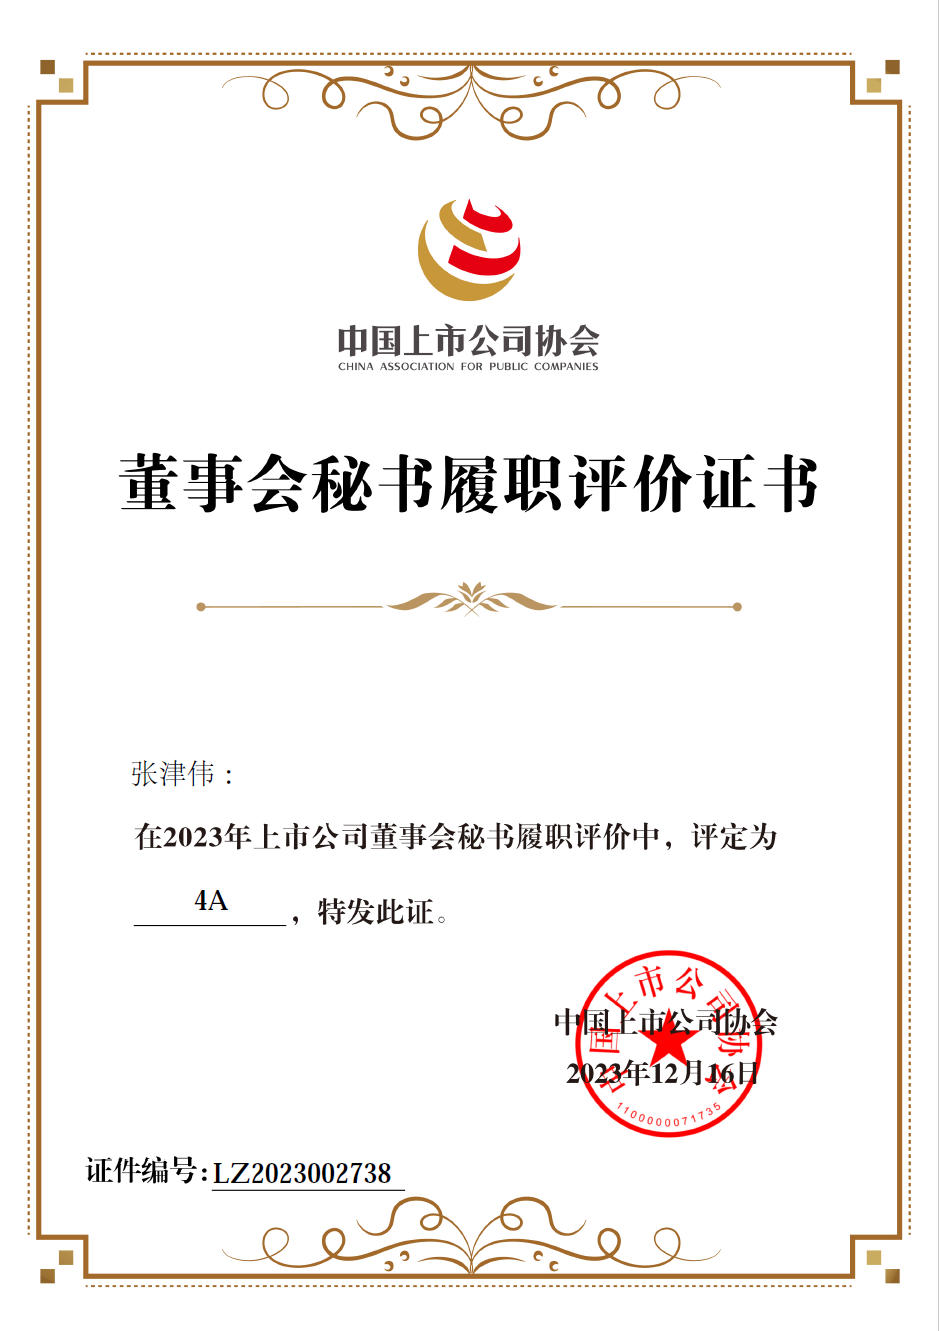 中国上市公司协会2023年“上市公司董秘履职评价”4A奖项